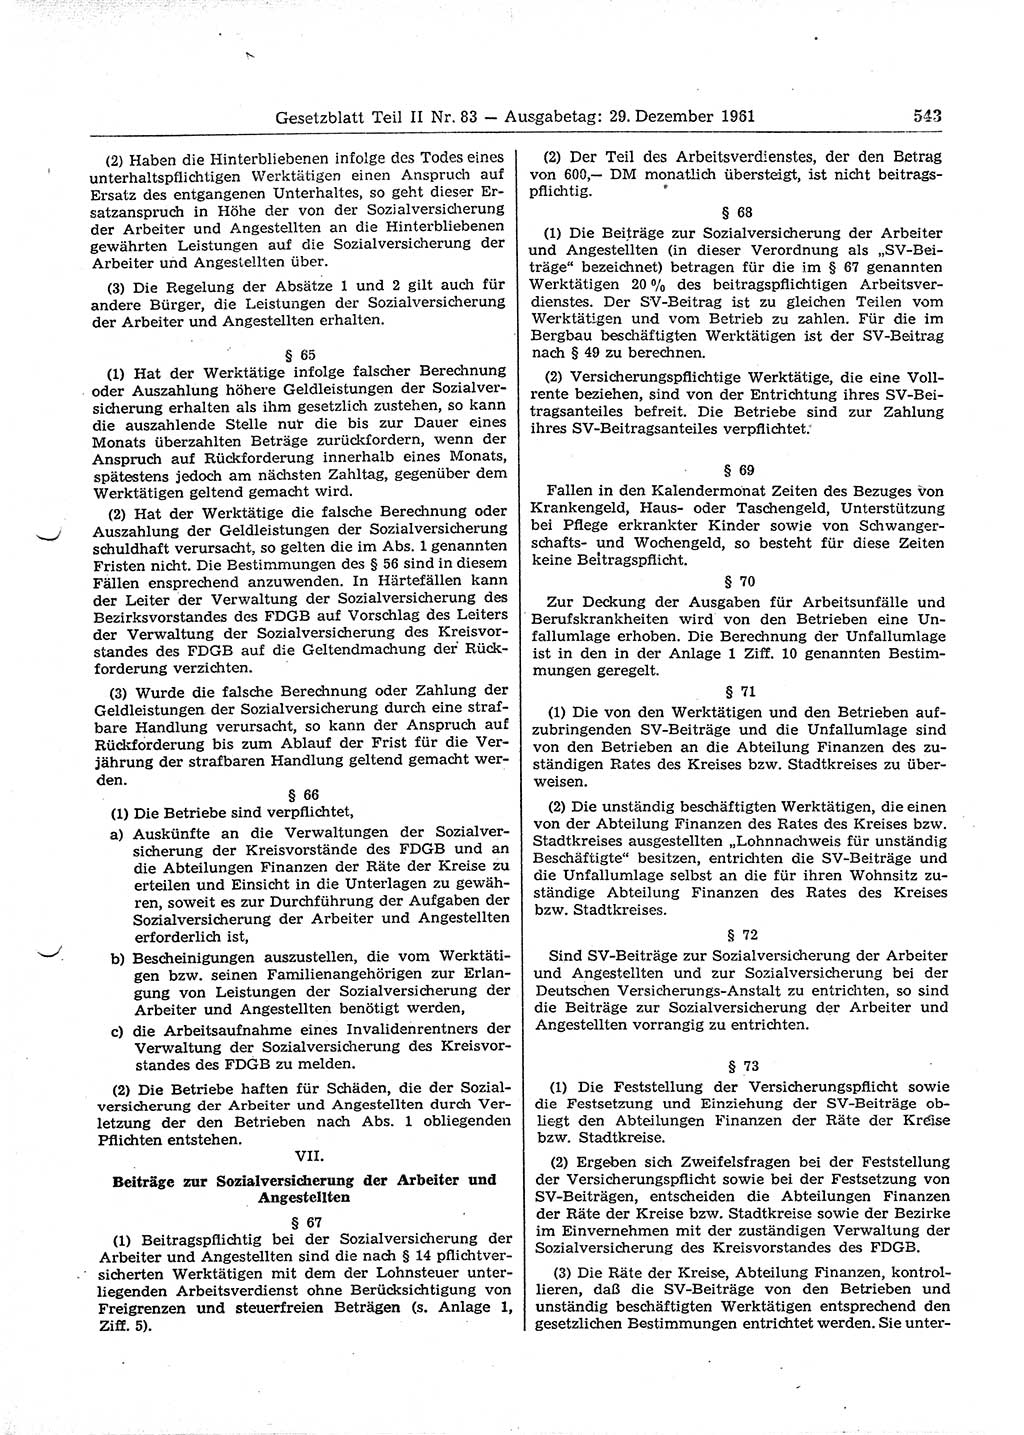 Gesetzblatt (GBl.) der Deutschen Demokratischen Republik (DDR) Teil ⅠⅠ 1961, Seite 543 (GBl. DDR ⅠⅠ 1961, S. 543)